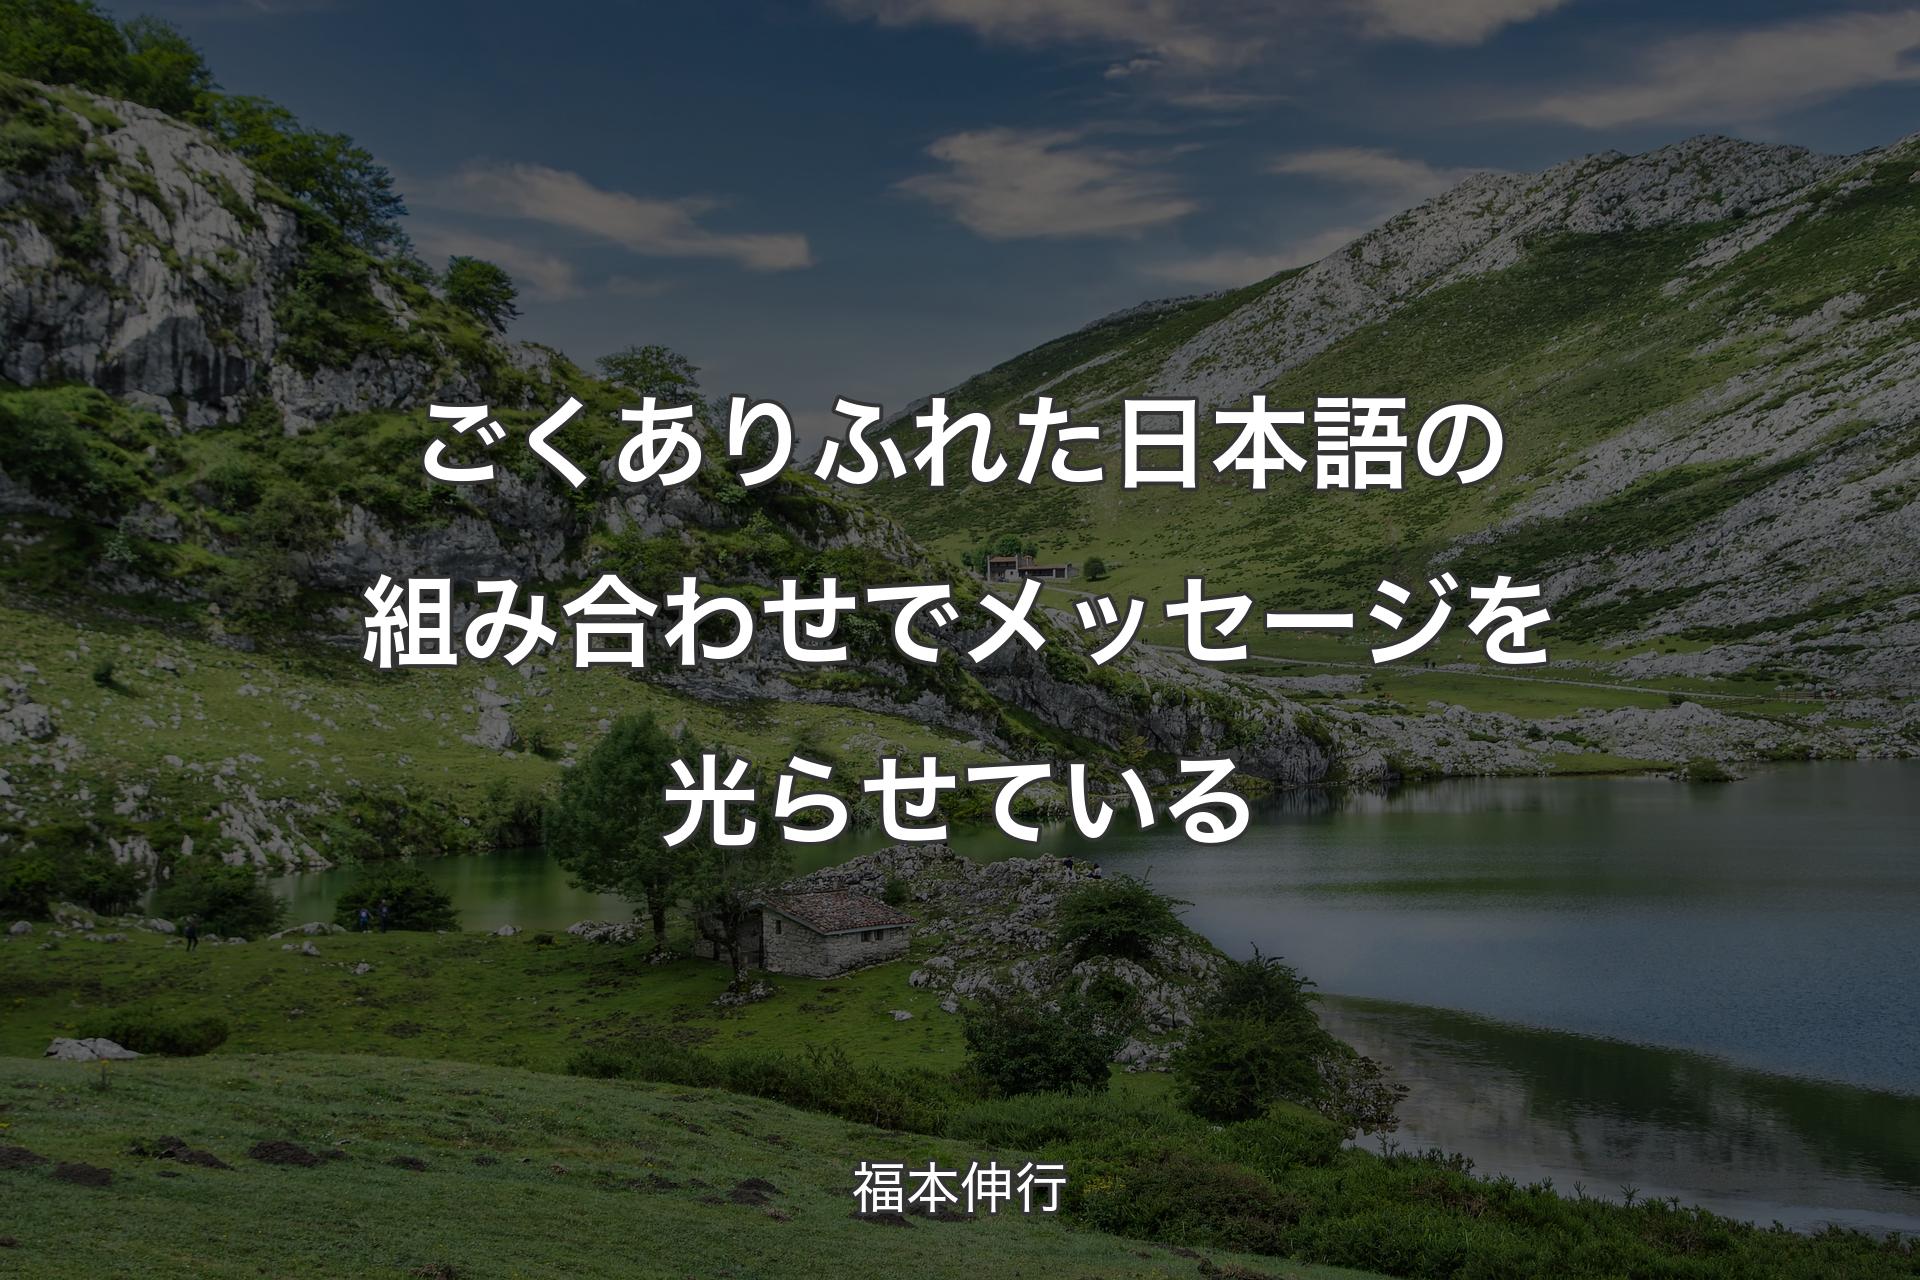 【背景1】ごくありふれた日本語の組み合わせでメッセージを光らせている - 福本伸行